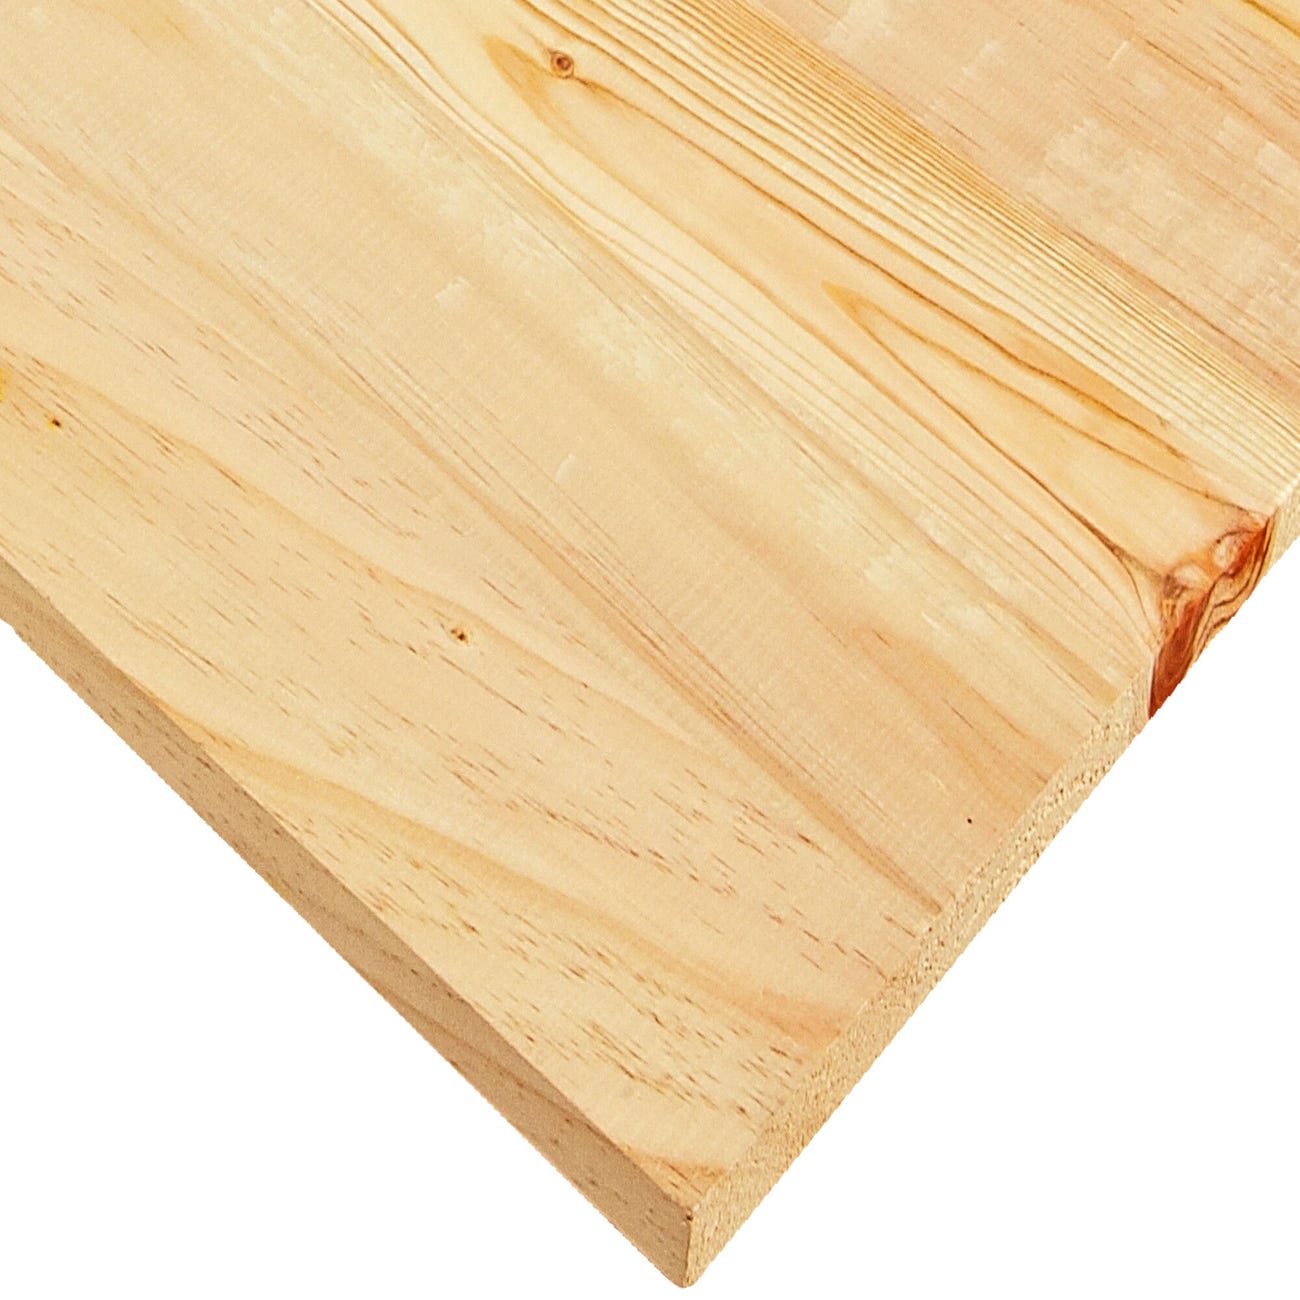 Crean una nueva cinta adhesiva utilizando madera - Forestal Maderero